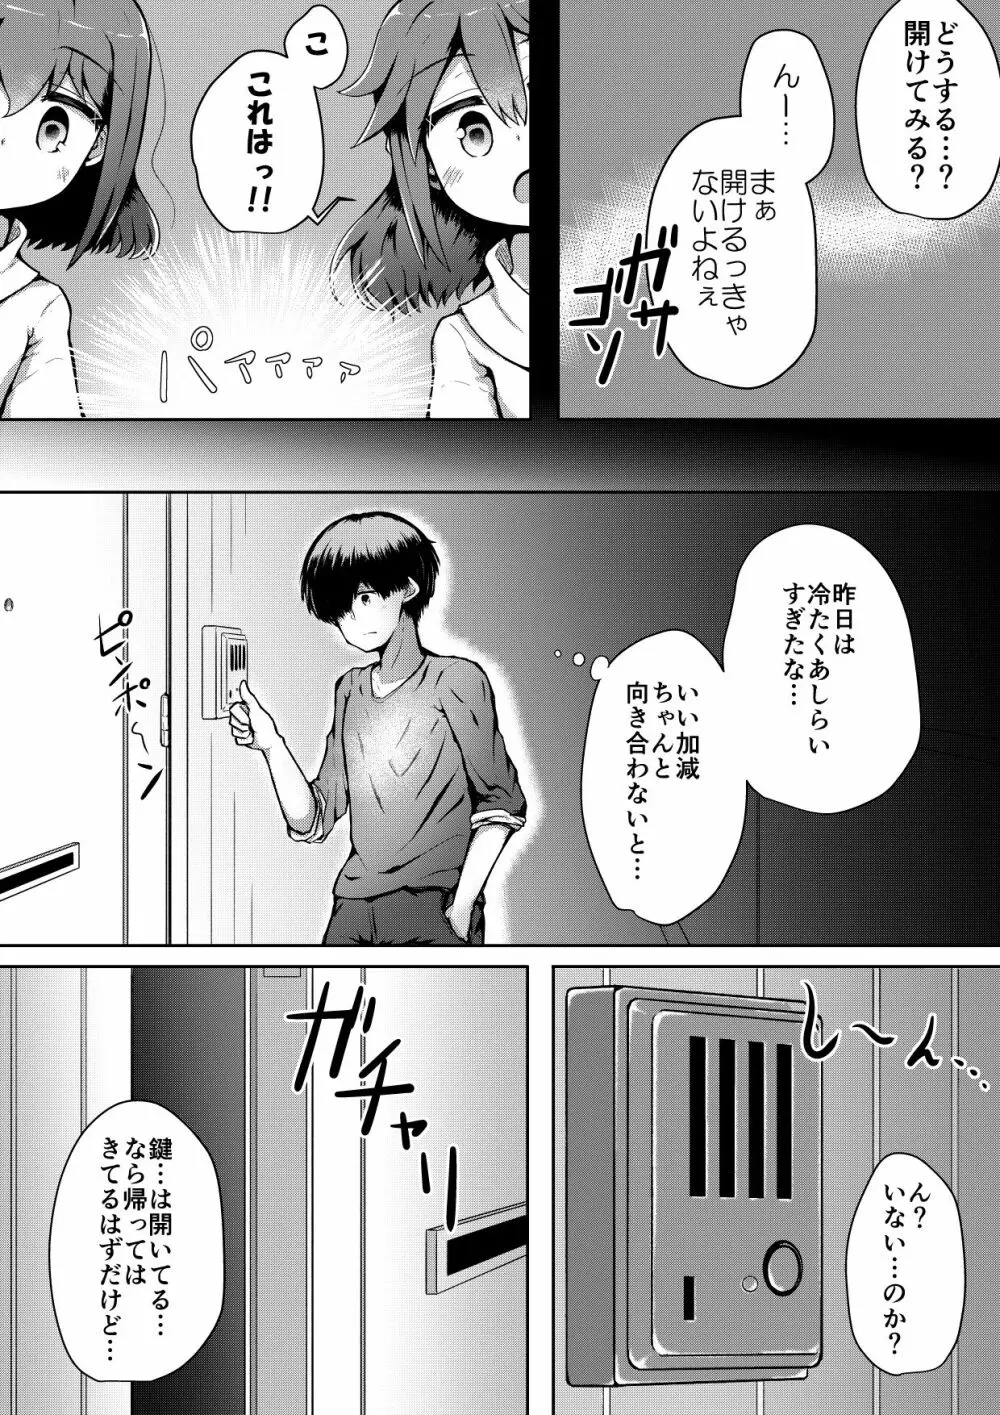 ふぉー・ふーむ・ごっど・わーくす - page63